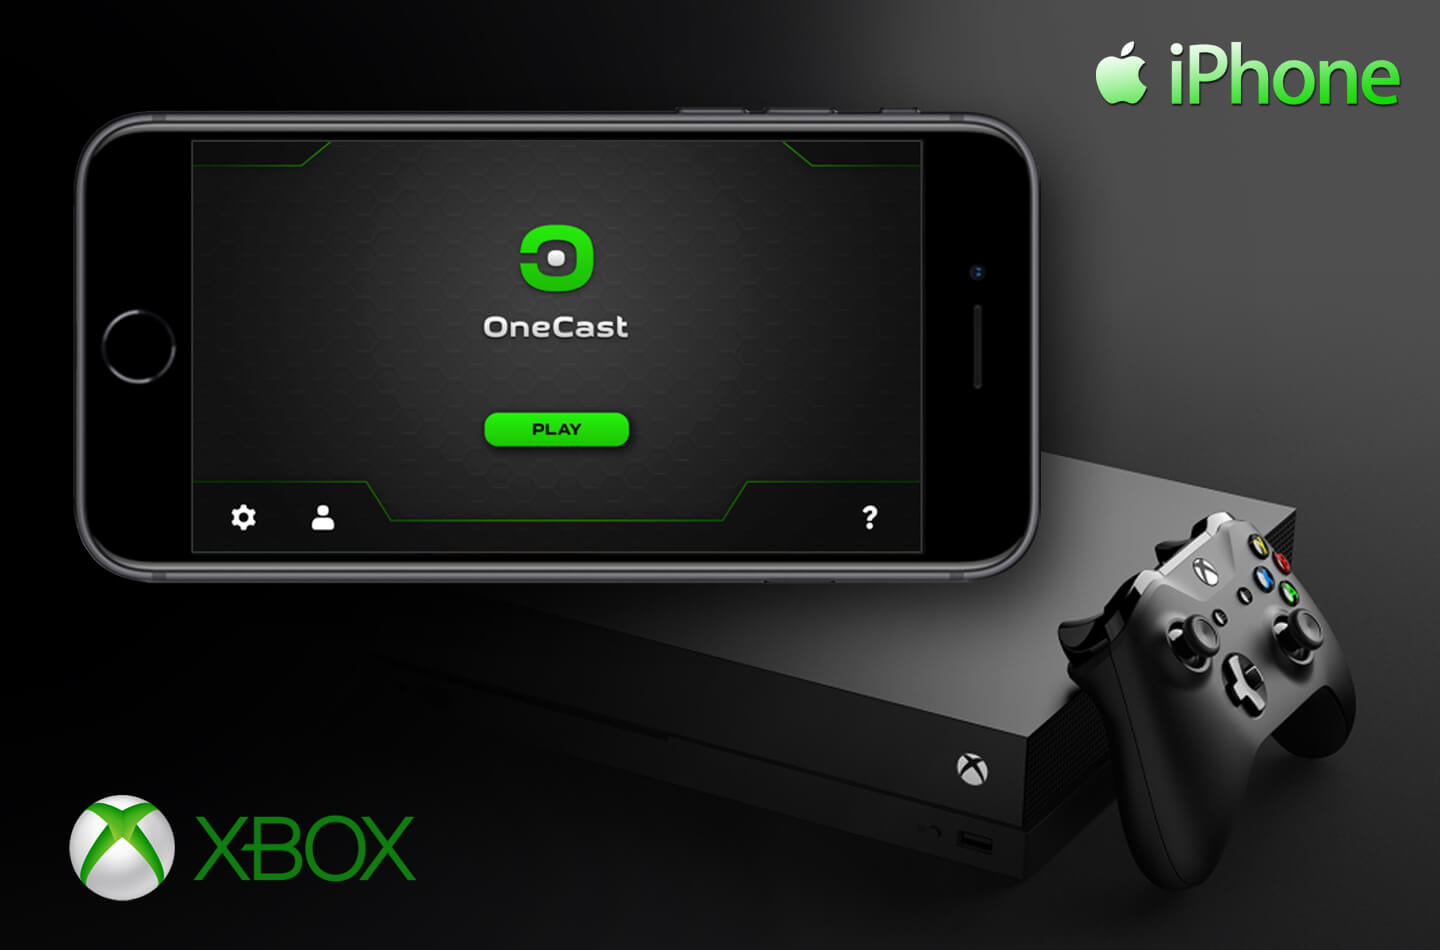 academisch glas Oprecht Xbox One games spelen op de iPhone | LetsGoDigital